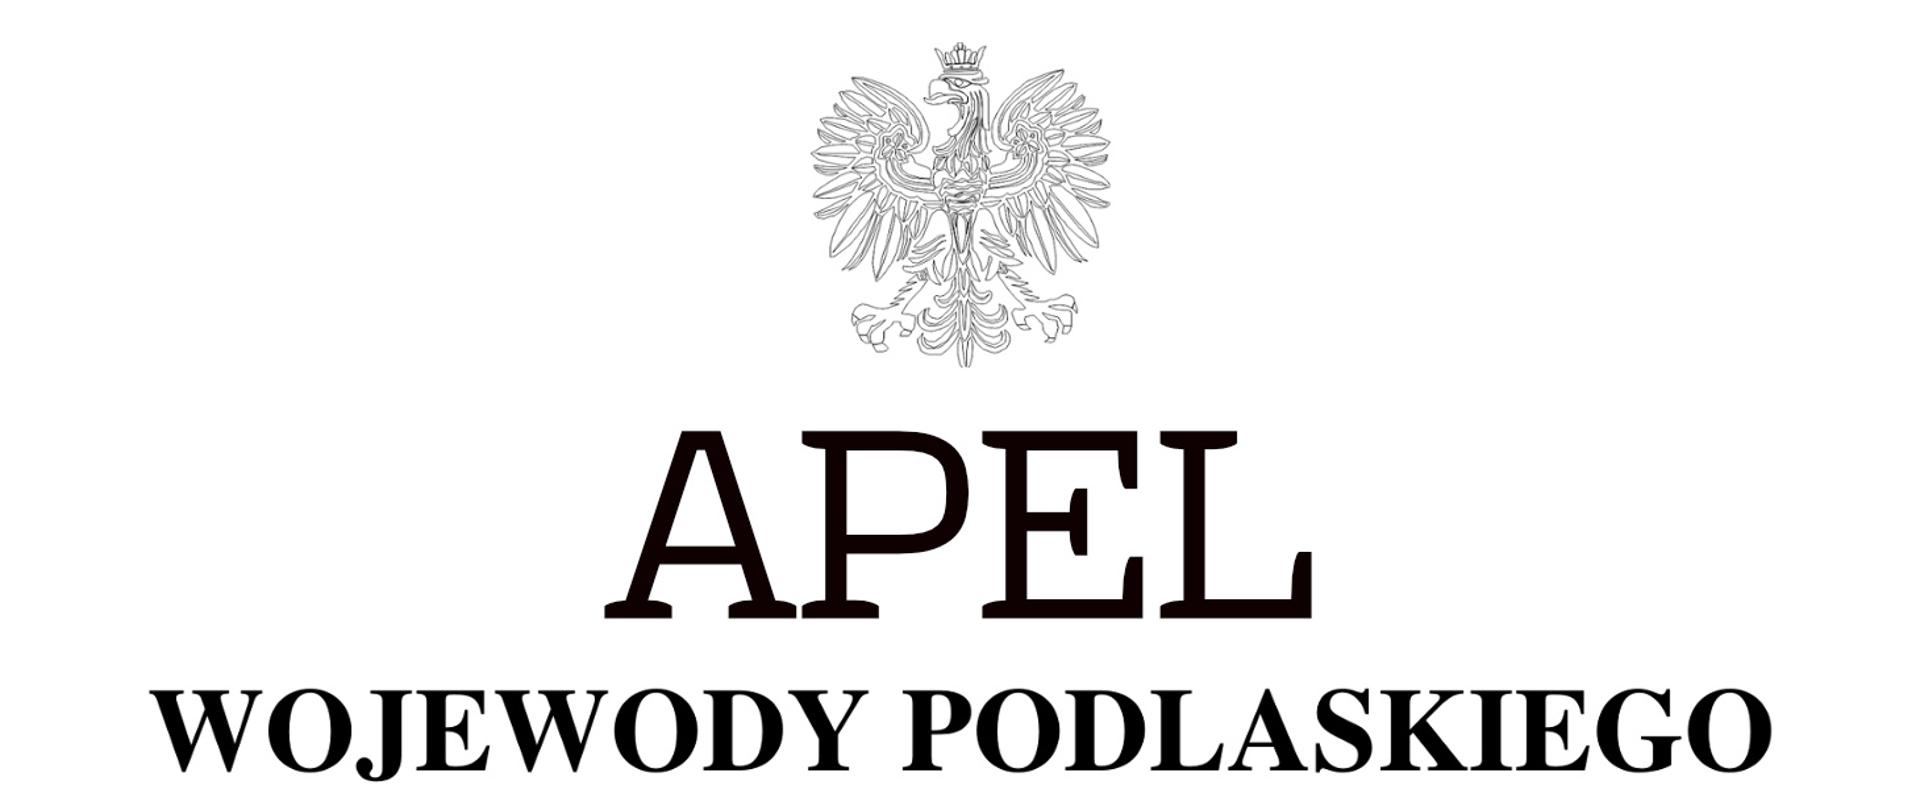 Apel_wojewody_podlaskiego